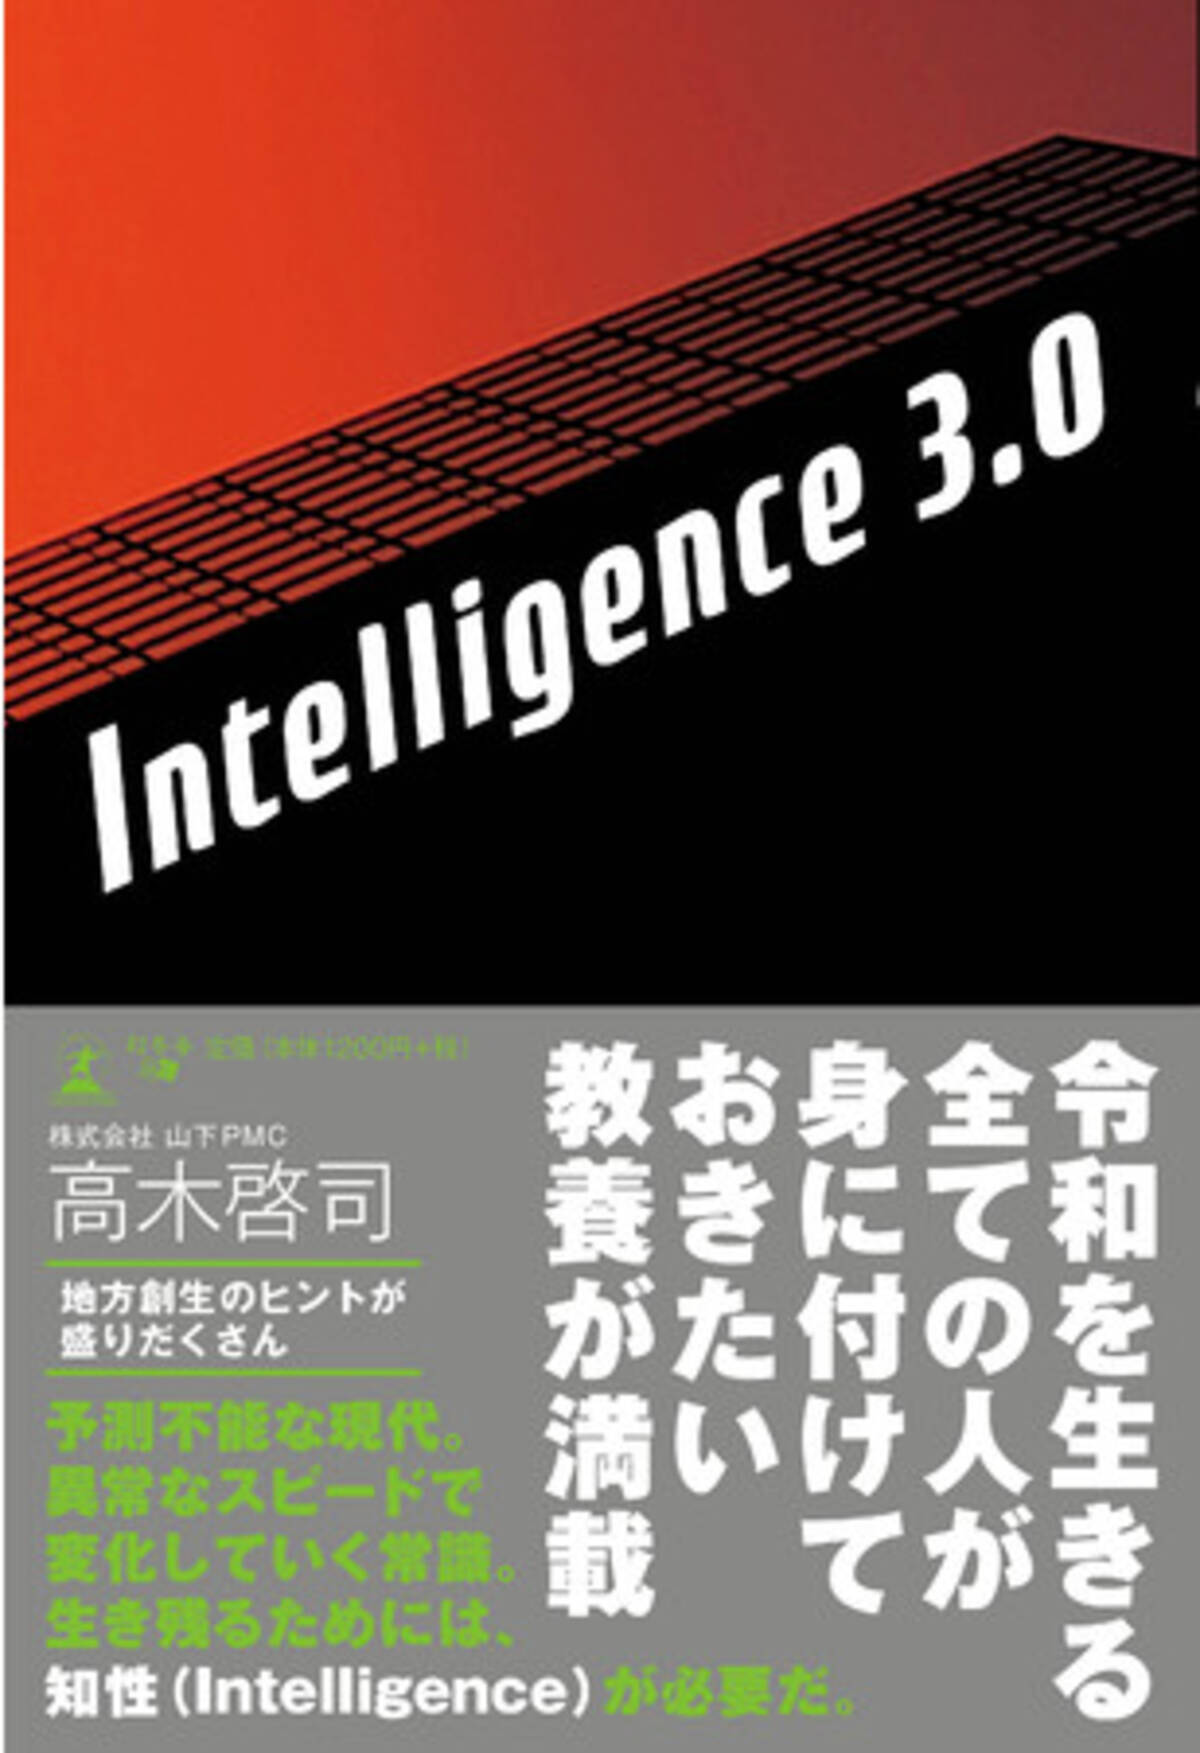 山下pmc 高木啓司 Intelligence 3 0 を刊行 年10月30日 エキサイトニュース